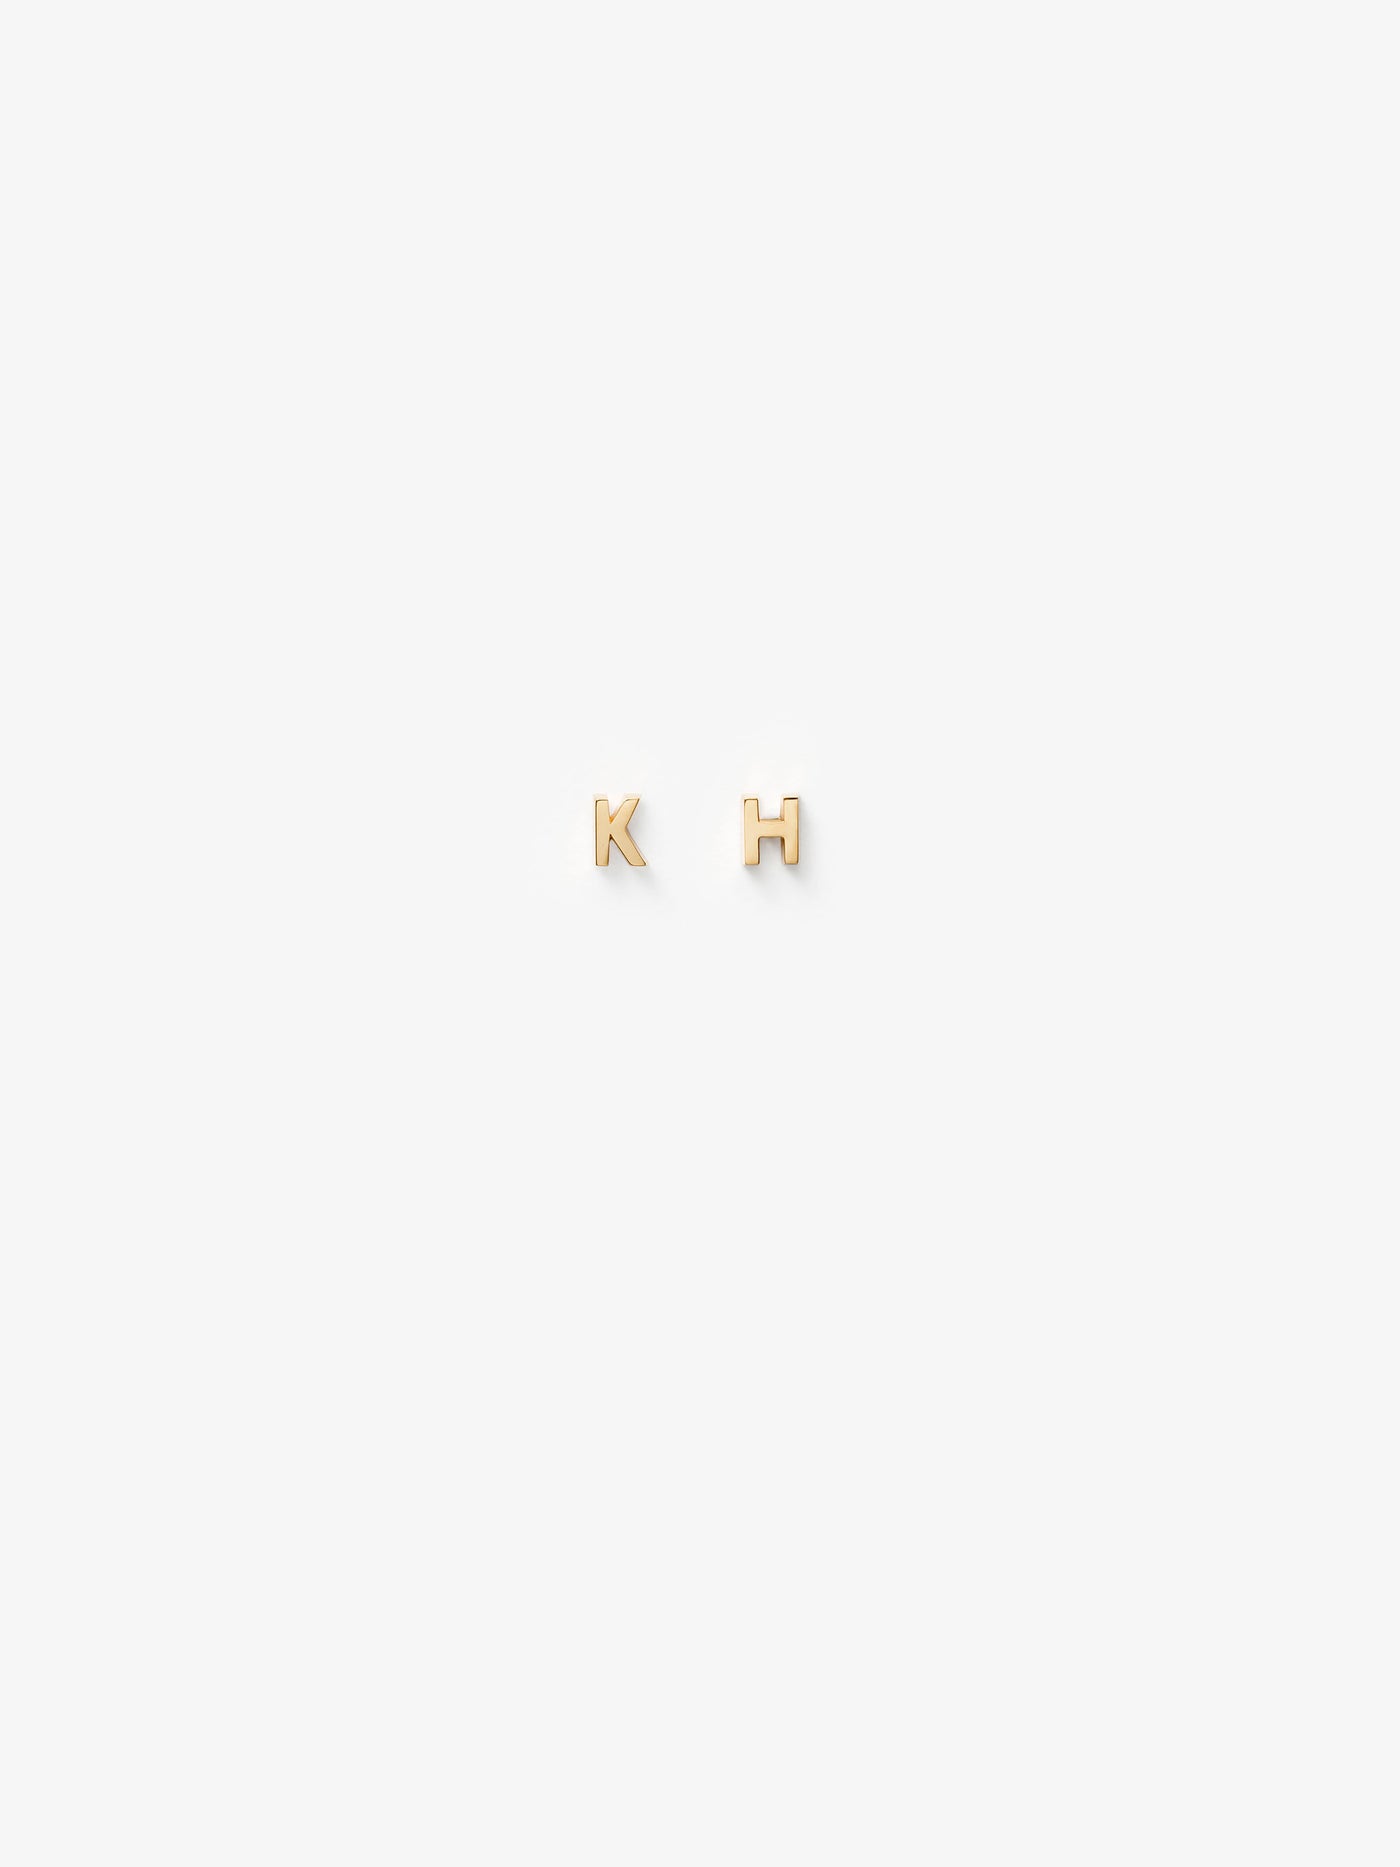 Two Letters Stud Earrings in 18k Gold